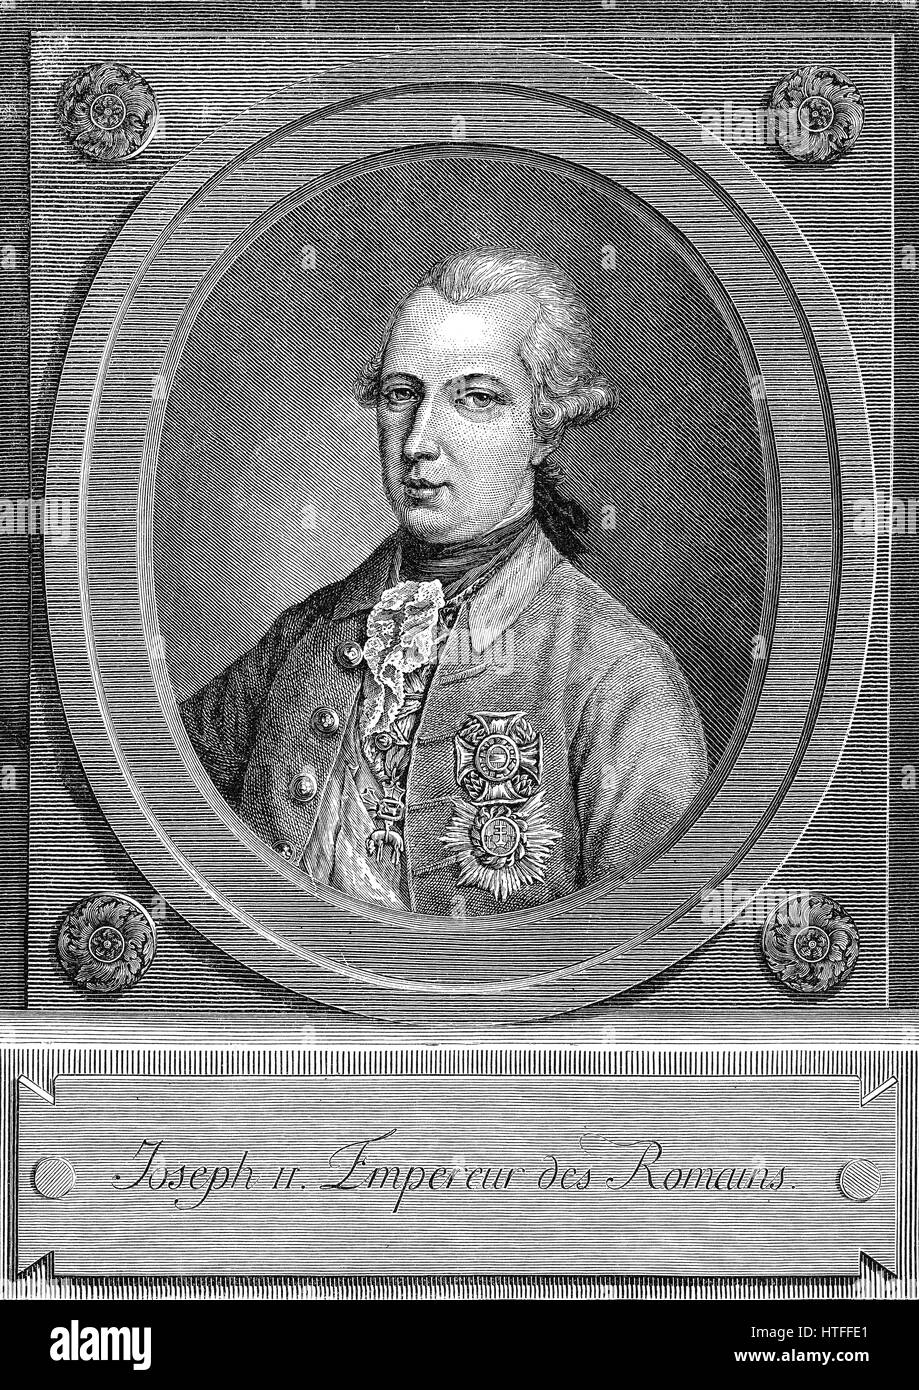 Joseph II, Emperor of Germany, 1741-1790 Stock Photo